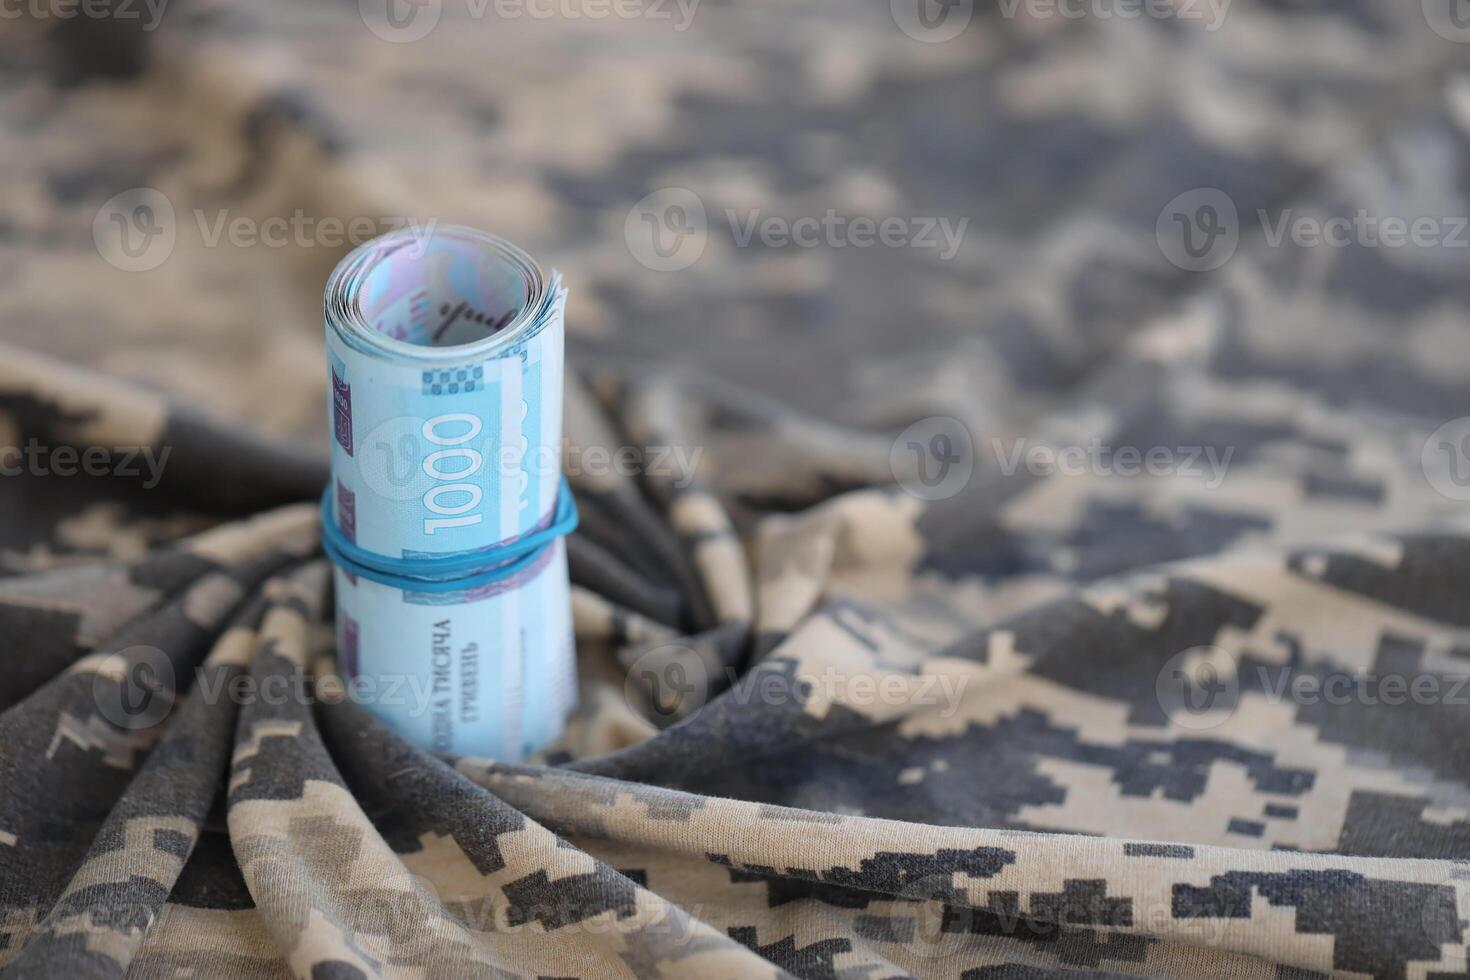 ukrainska hryvnian räkningar på tyg med textur av ukrainska militär pixeled kamouflage. trasa med camo mönster i grå, brun och grön pixel former. officiell enhetlig av ukrainska soldater foto